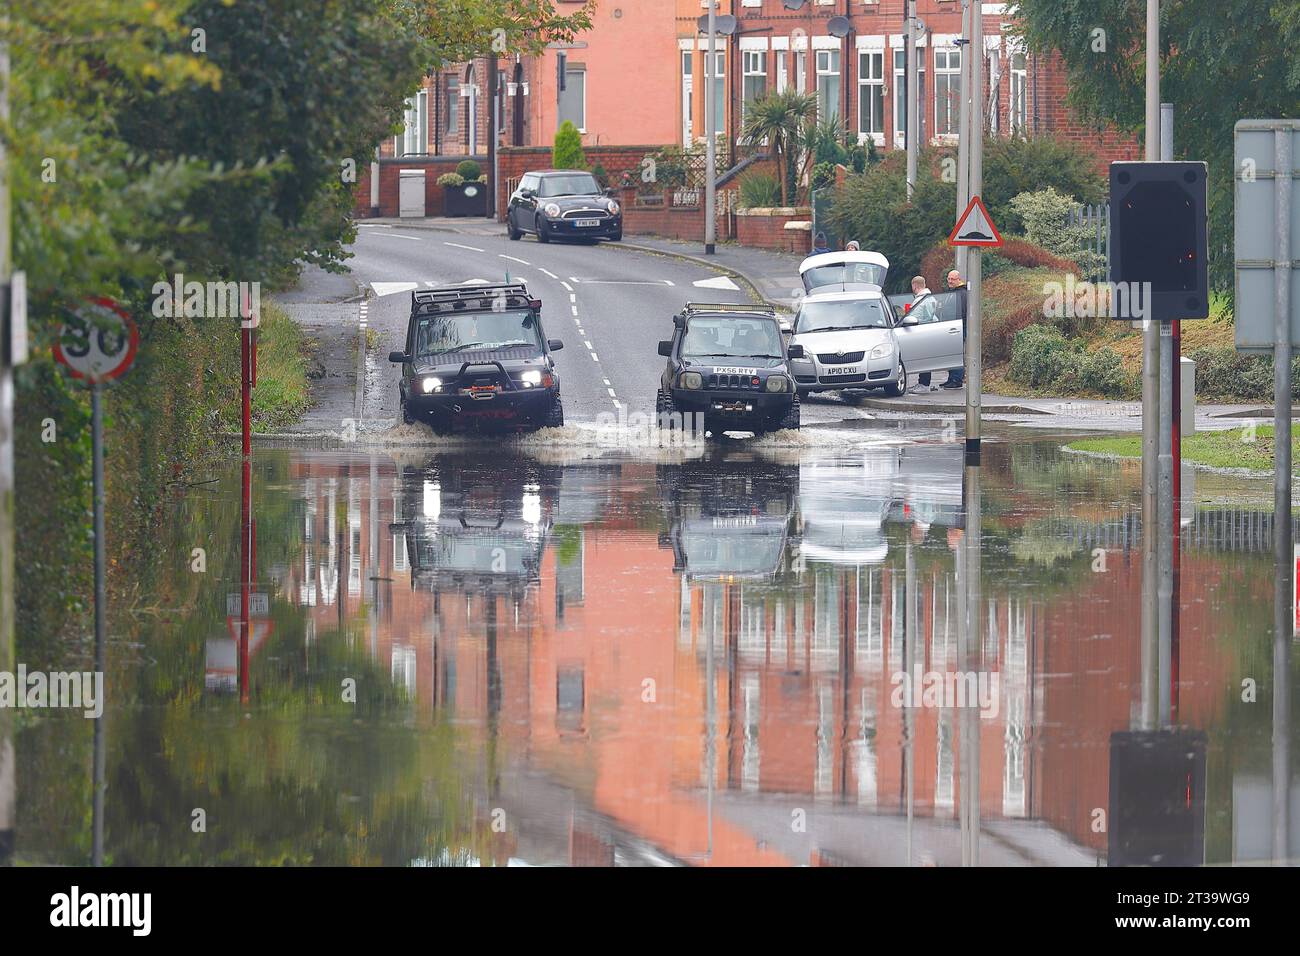 21 octobre tempête Babet inondant Station Road à Allerton Bywater, West Yorkshire, Royaume-Uni Banque D'Images